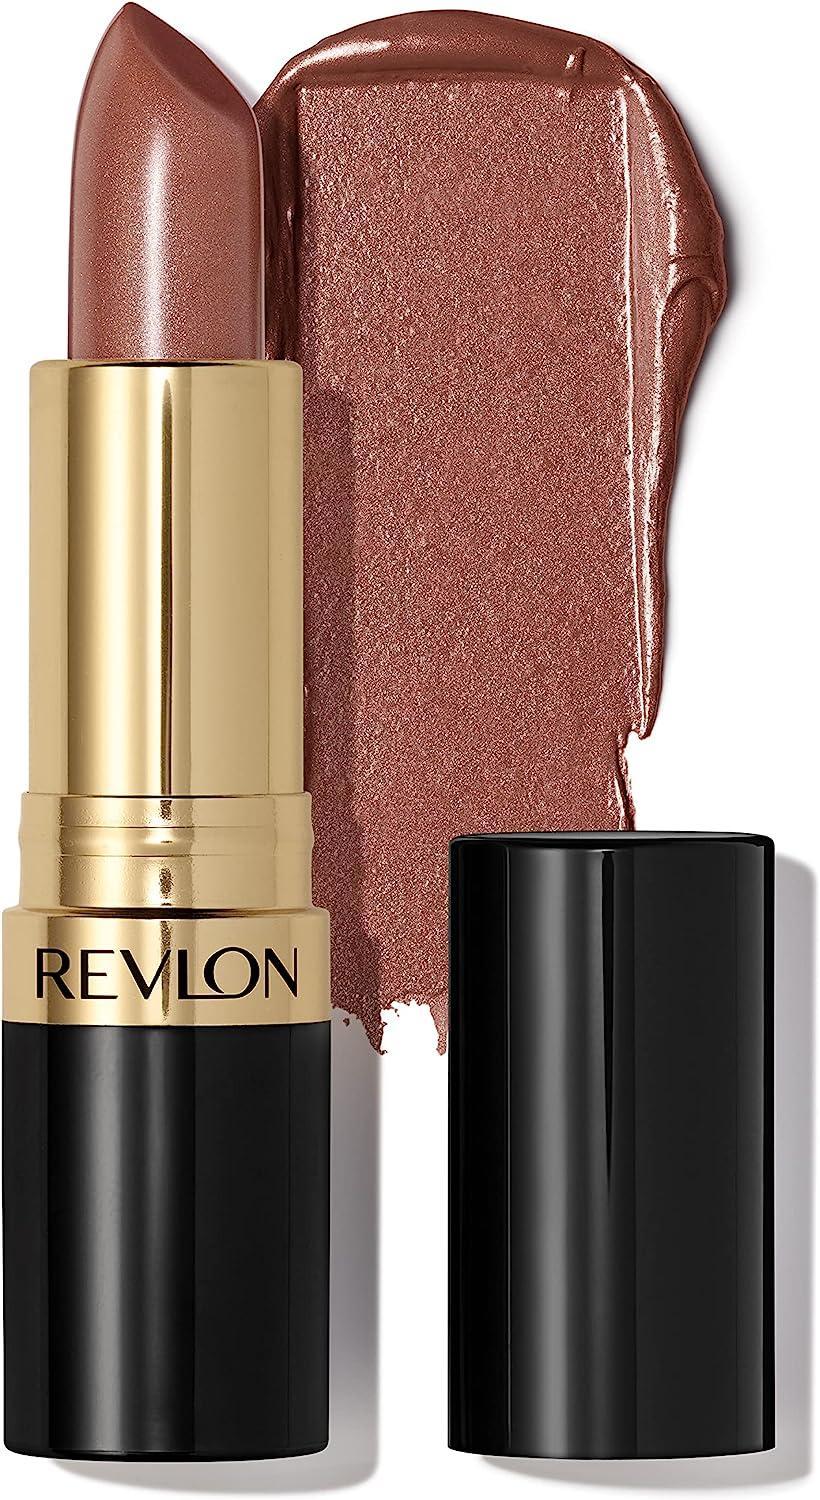 Revlon Super Lustrous #103 Lipstick - Caramel Glace - Premium Quality